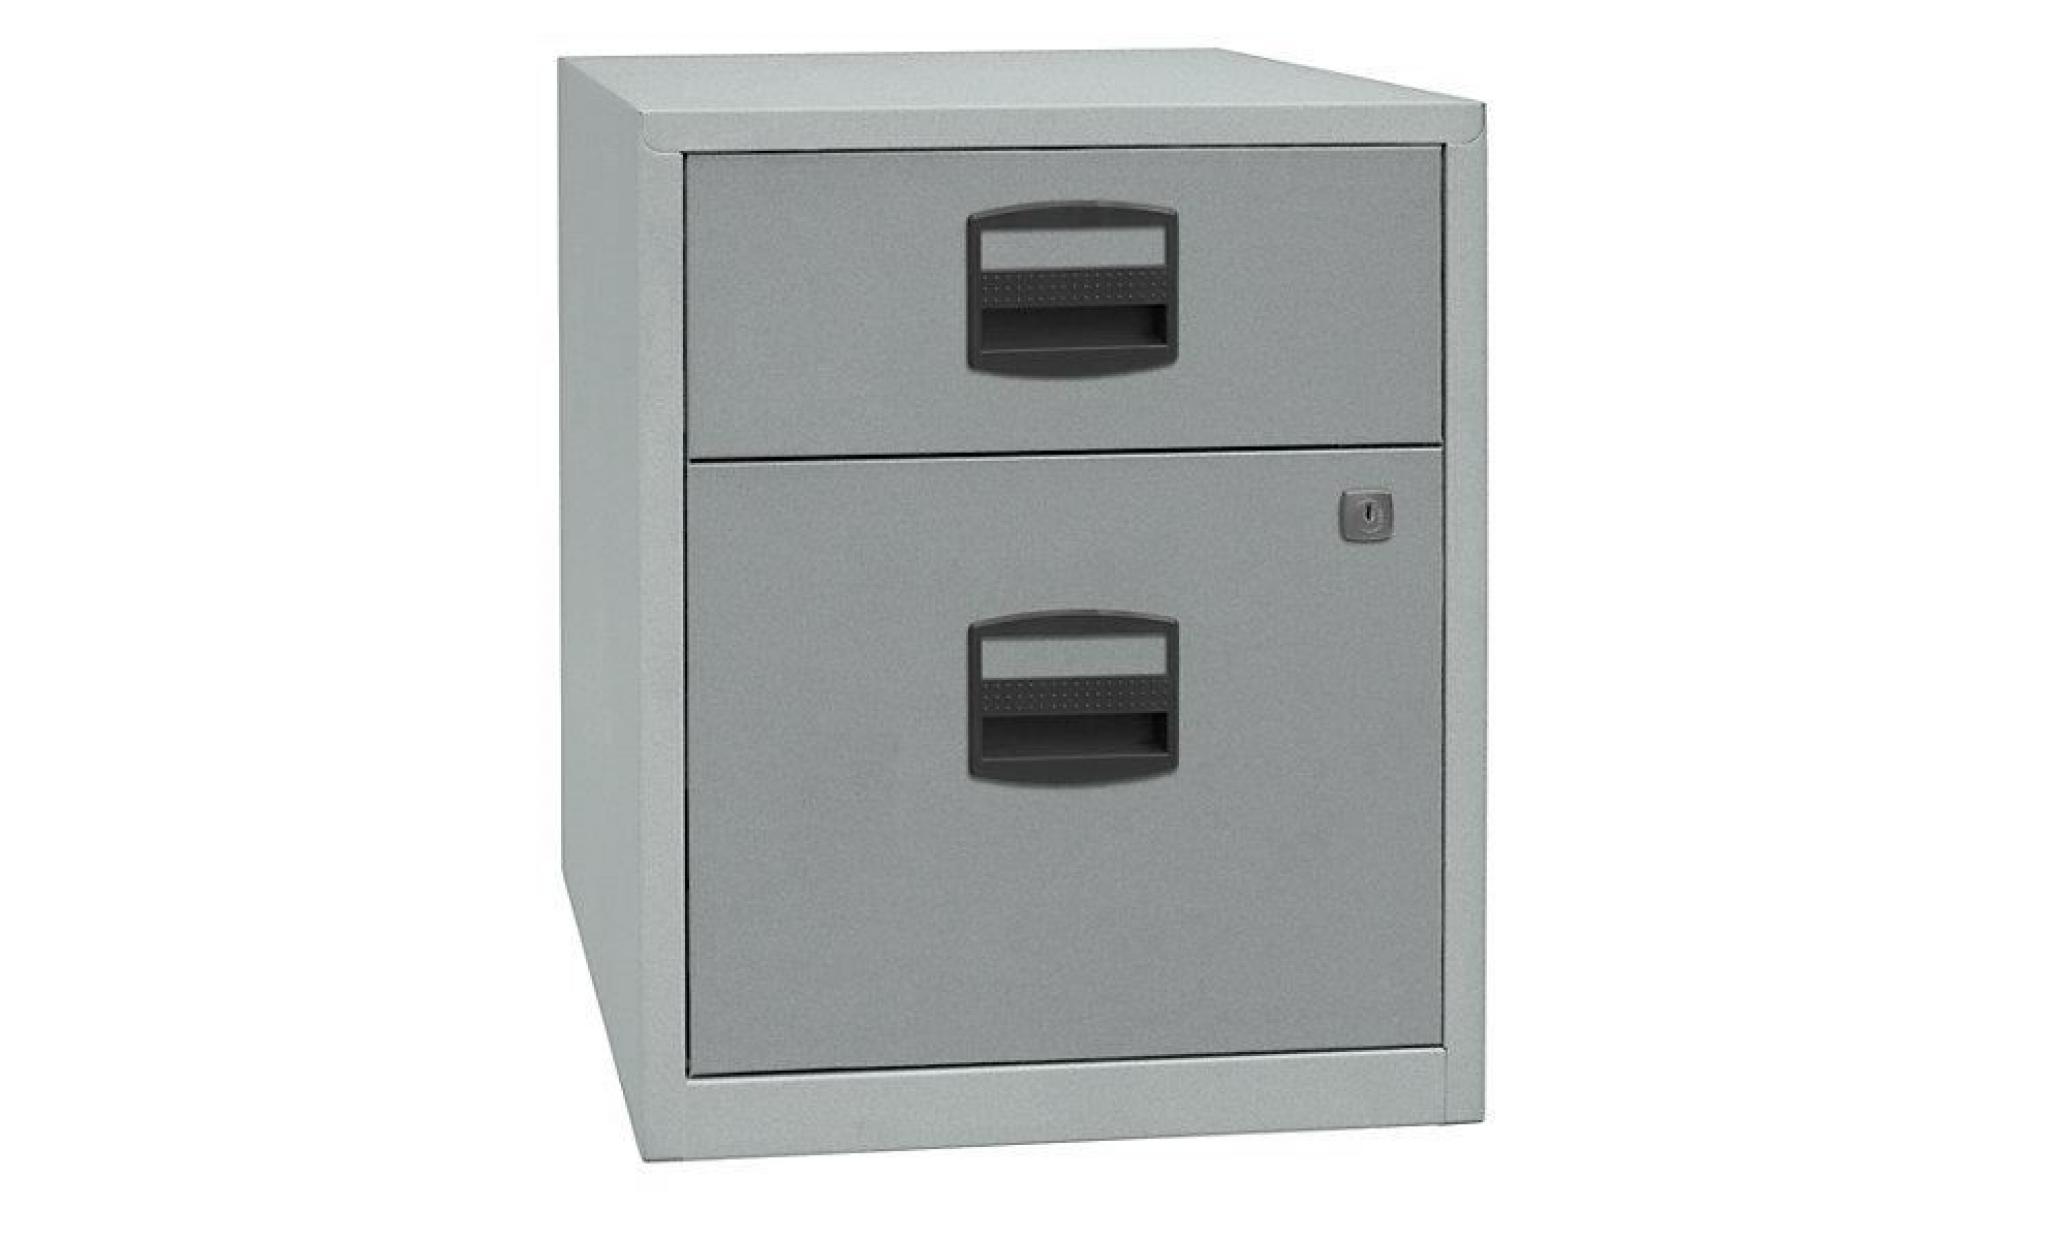 armoire mobile hauteur bureau pfa   1 tiroir, 1 tiroir pour ds gris clair / bleu oxford   armoire basse armoire de bureau armoires